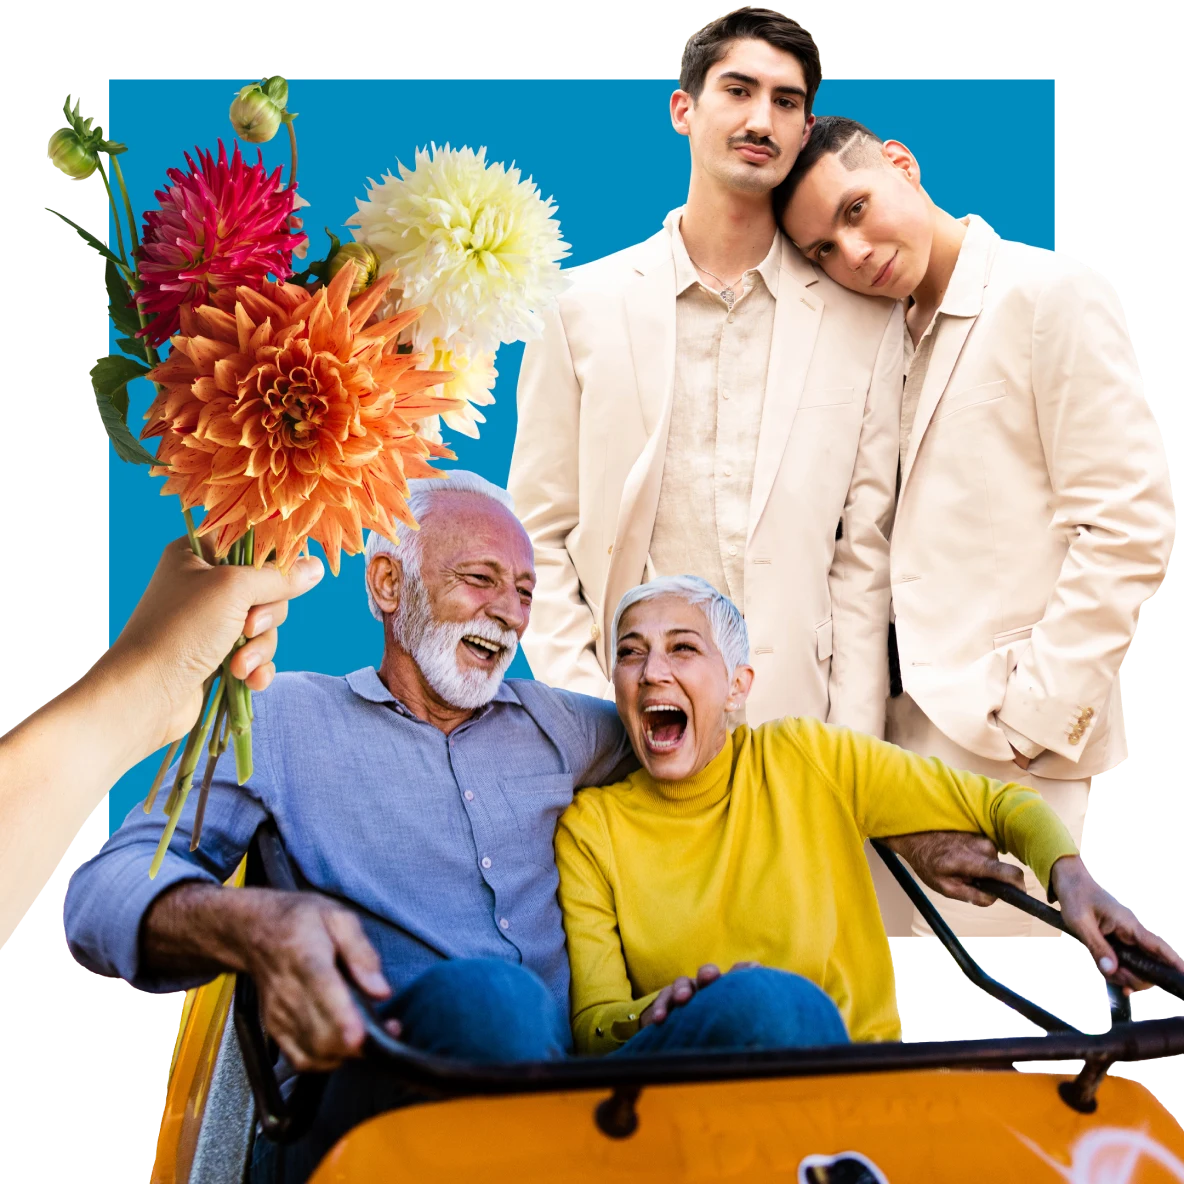 Zwei Pärchen. Ein weißer Mann und ein Asiate in beigen Anzügen zur Rechten, einer legt seinen Kopf auf die Schulter des anderen. Links hält eine weiße Hand einen Strauß mit orangefarbenen Blumen. Im Vordergrund sitzen ein älterer weißer Mann und eine Frau in einem orangefarbenen Achterbahnwagen.
